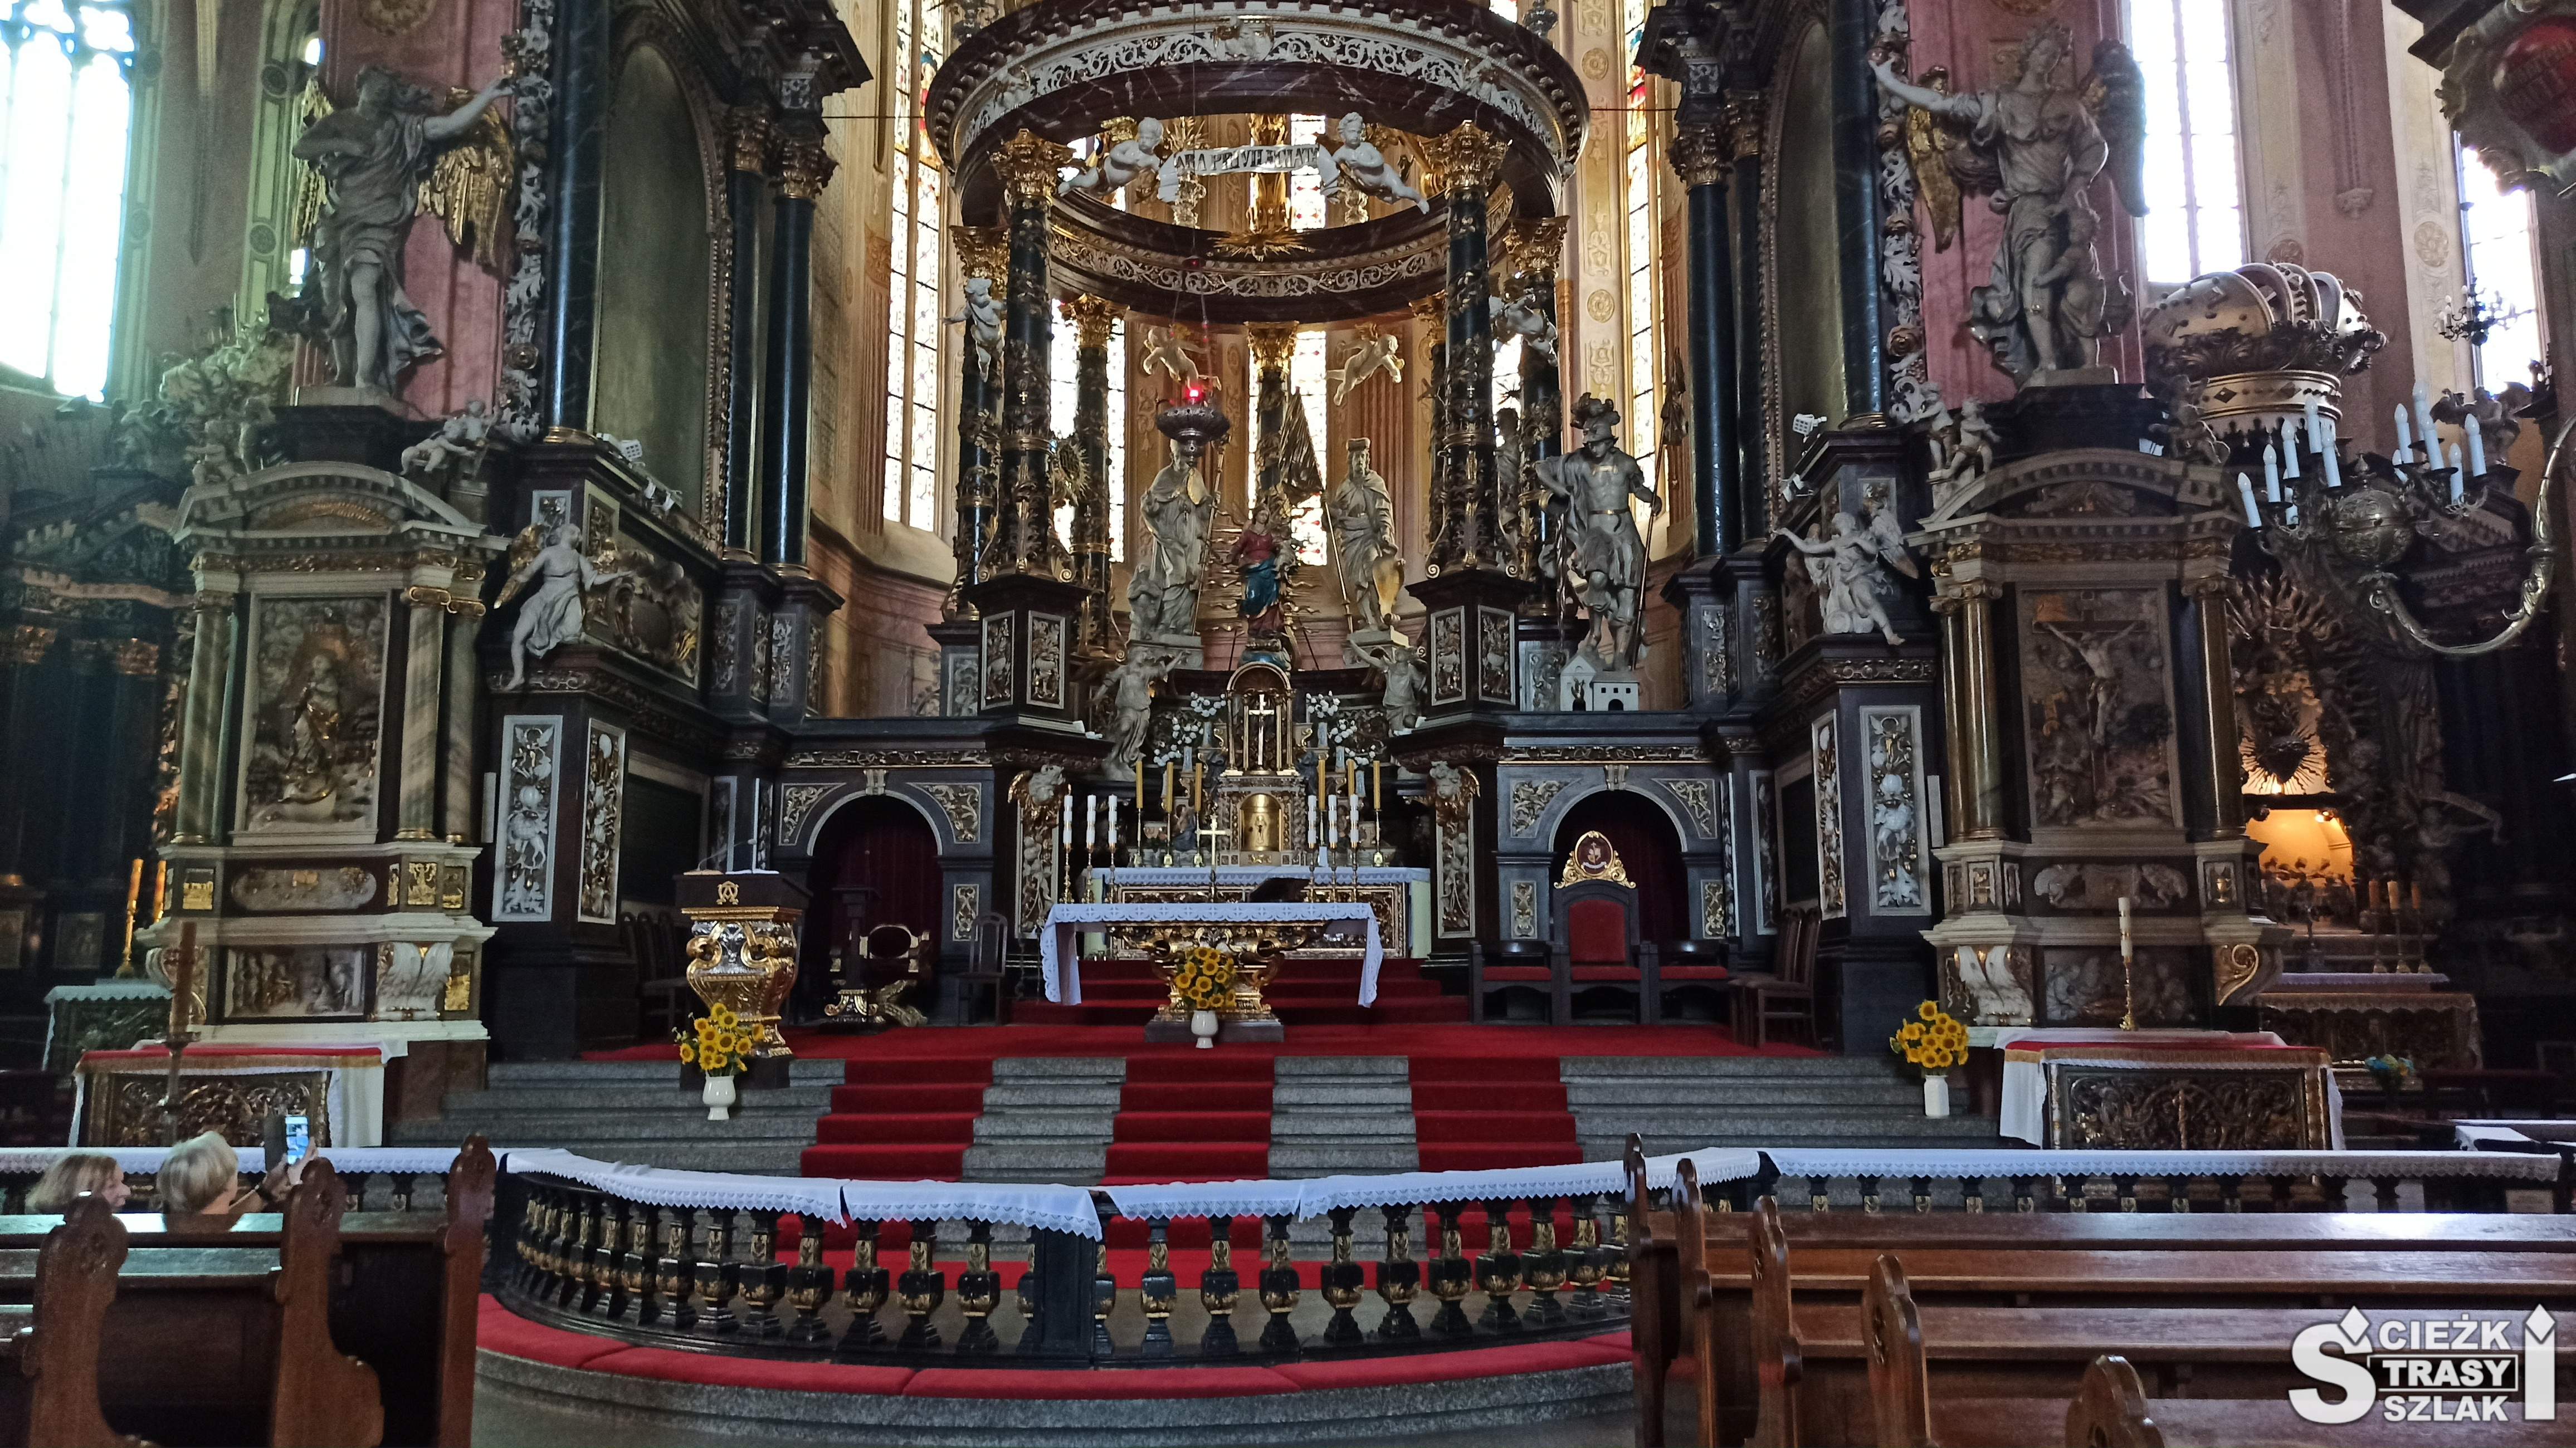 Ołtarz główny katedry w Świdnicy - tron Chrystusa na 7-u kolumnach